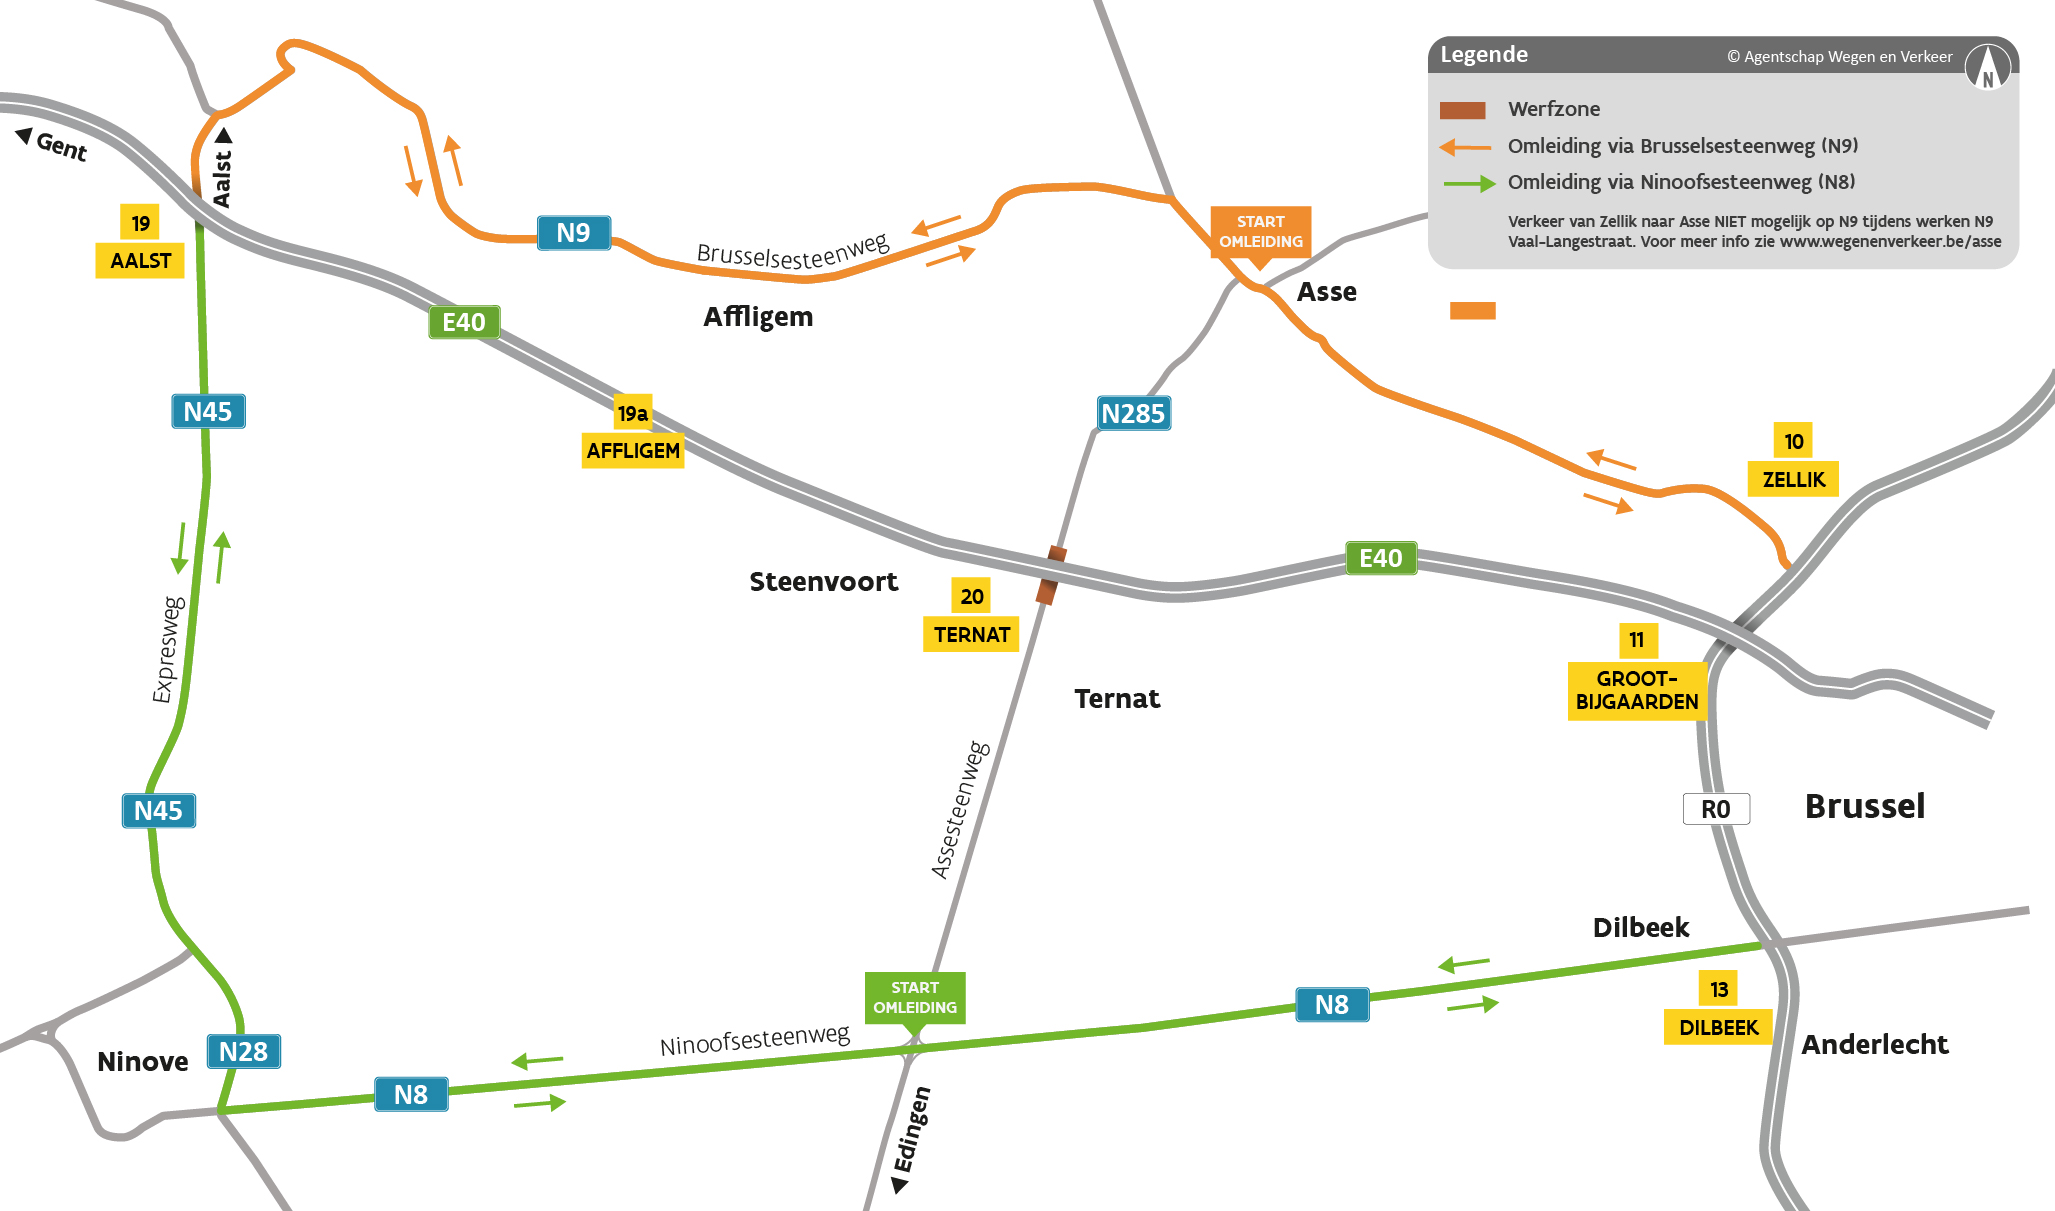 De omleiding voor het doorgaand verkeer verloopt via de Brusselsesteenweg en de Ninoofsesteenweg. Zo wordt de werfzone rond de werken aan de Assesteenweg vermeden.